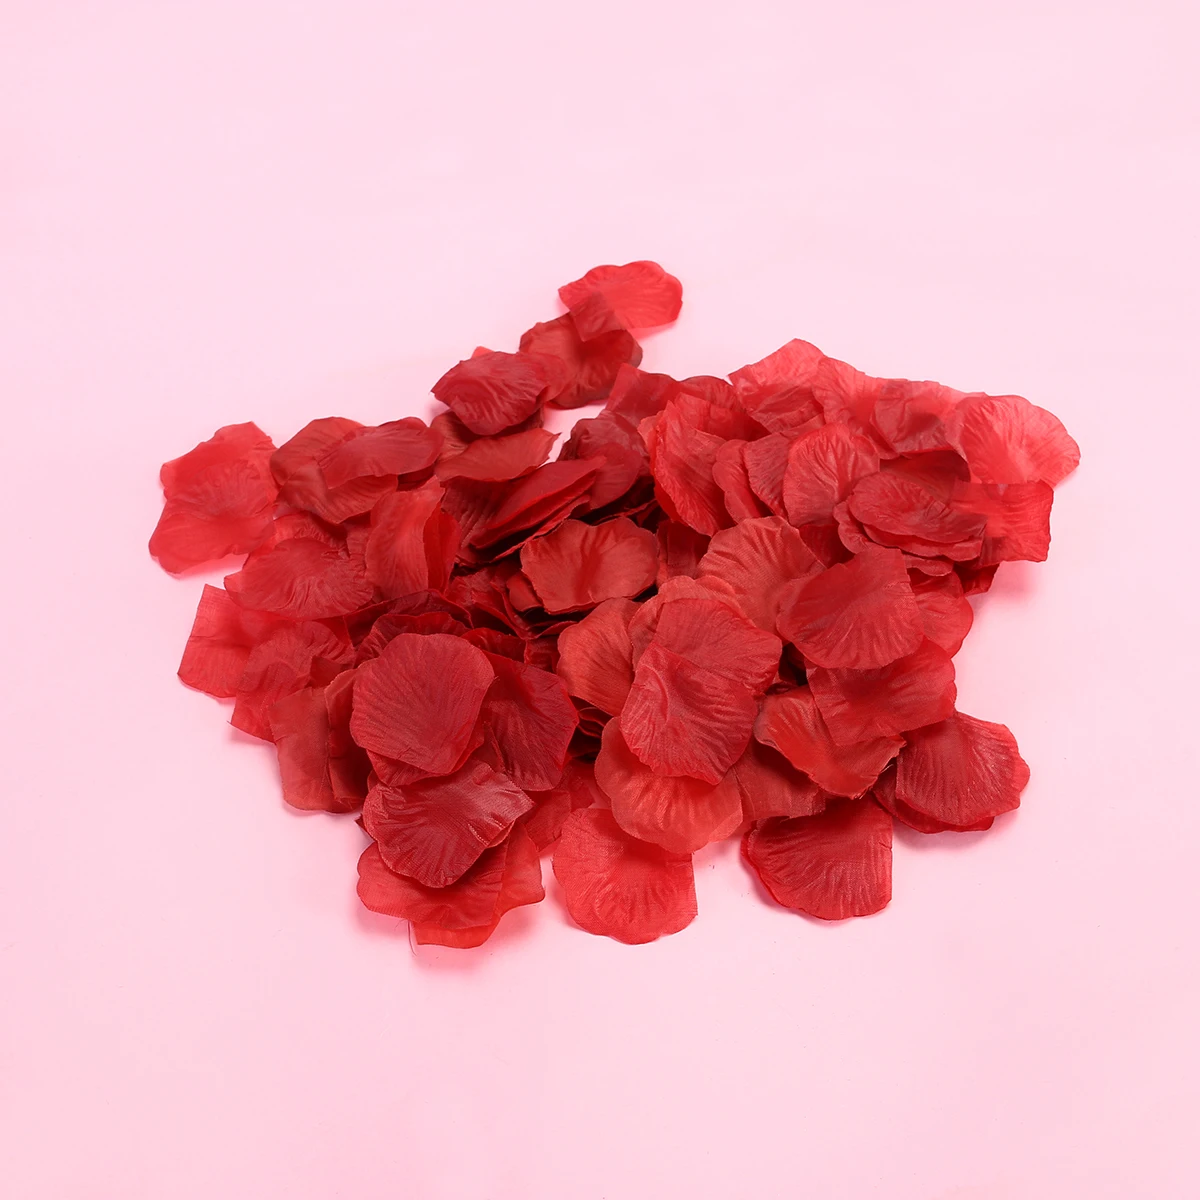 70 г поддельные искусственные лепестки роз свадебное украшение цветок(красное вино